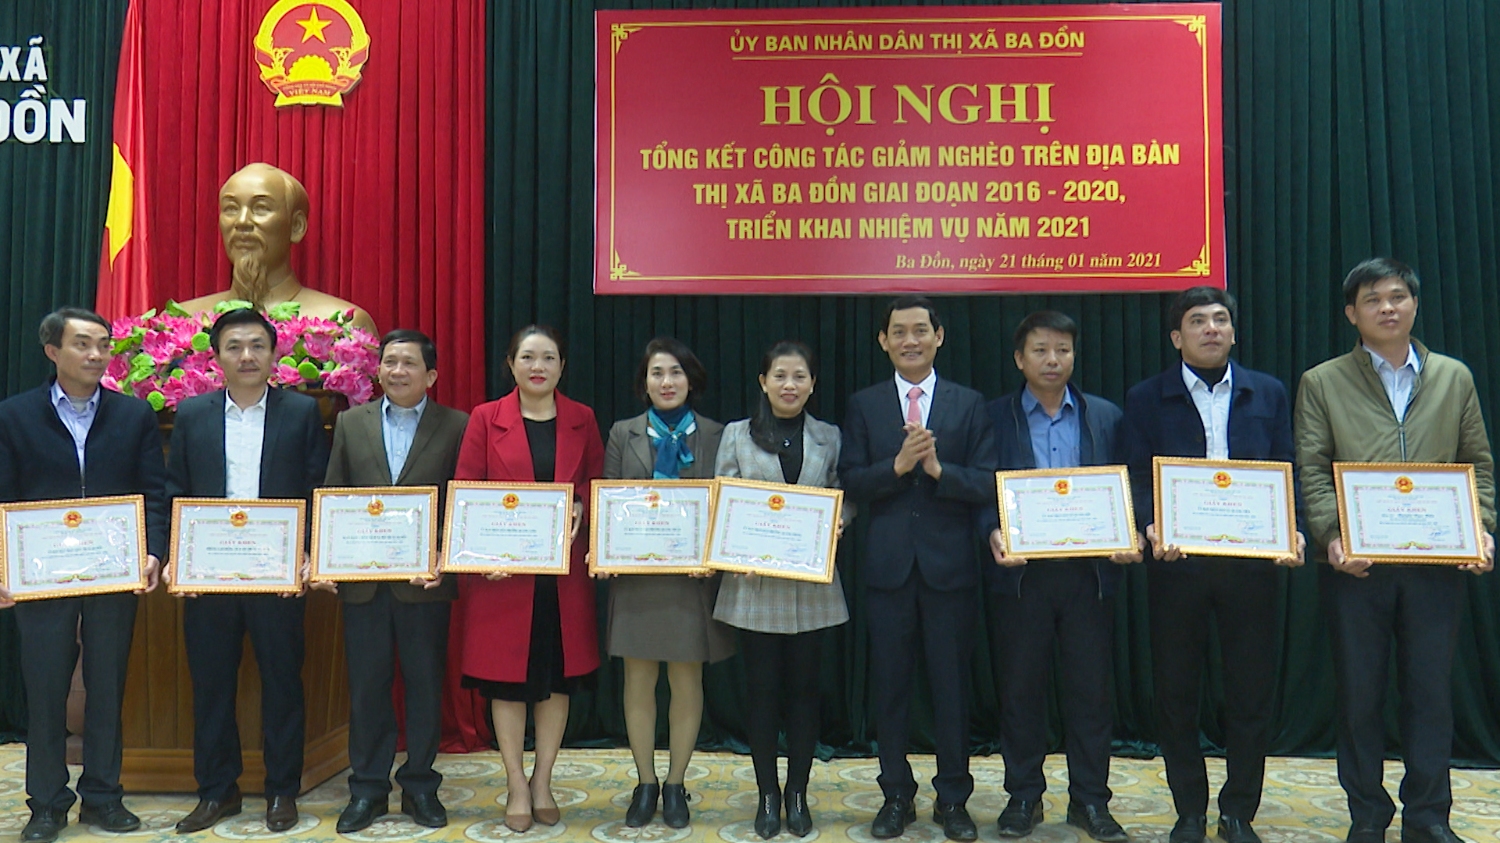 Đồng chí Nguyễn Văn Tình ThUV, Phó Chủ tịch UBND thị xã tặng giấy khen cho các đơn vị có thành tích trong công tác giảm nghèo giai đoạn 2016 2020